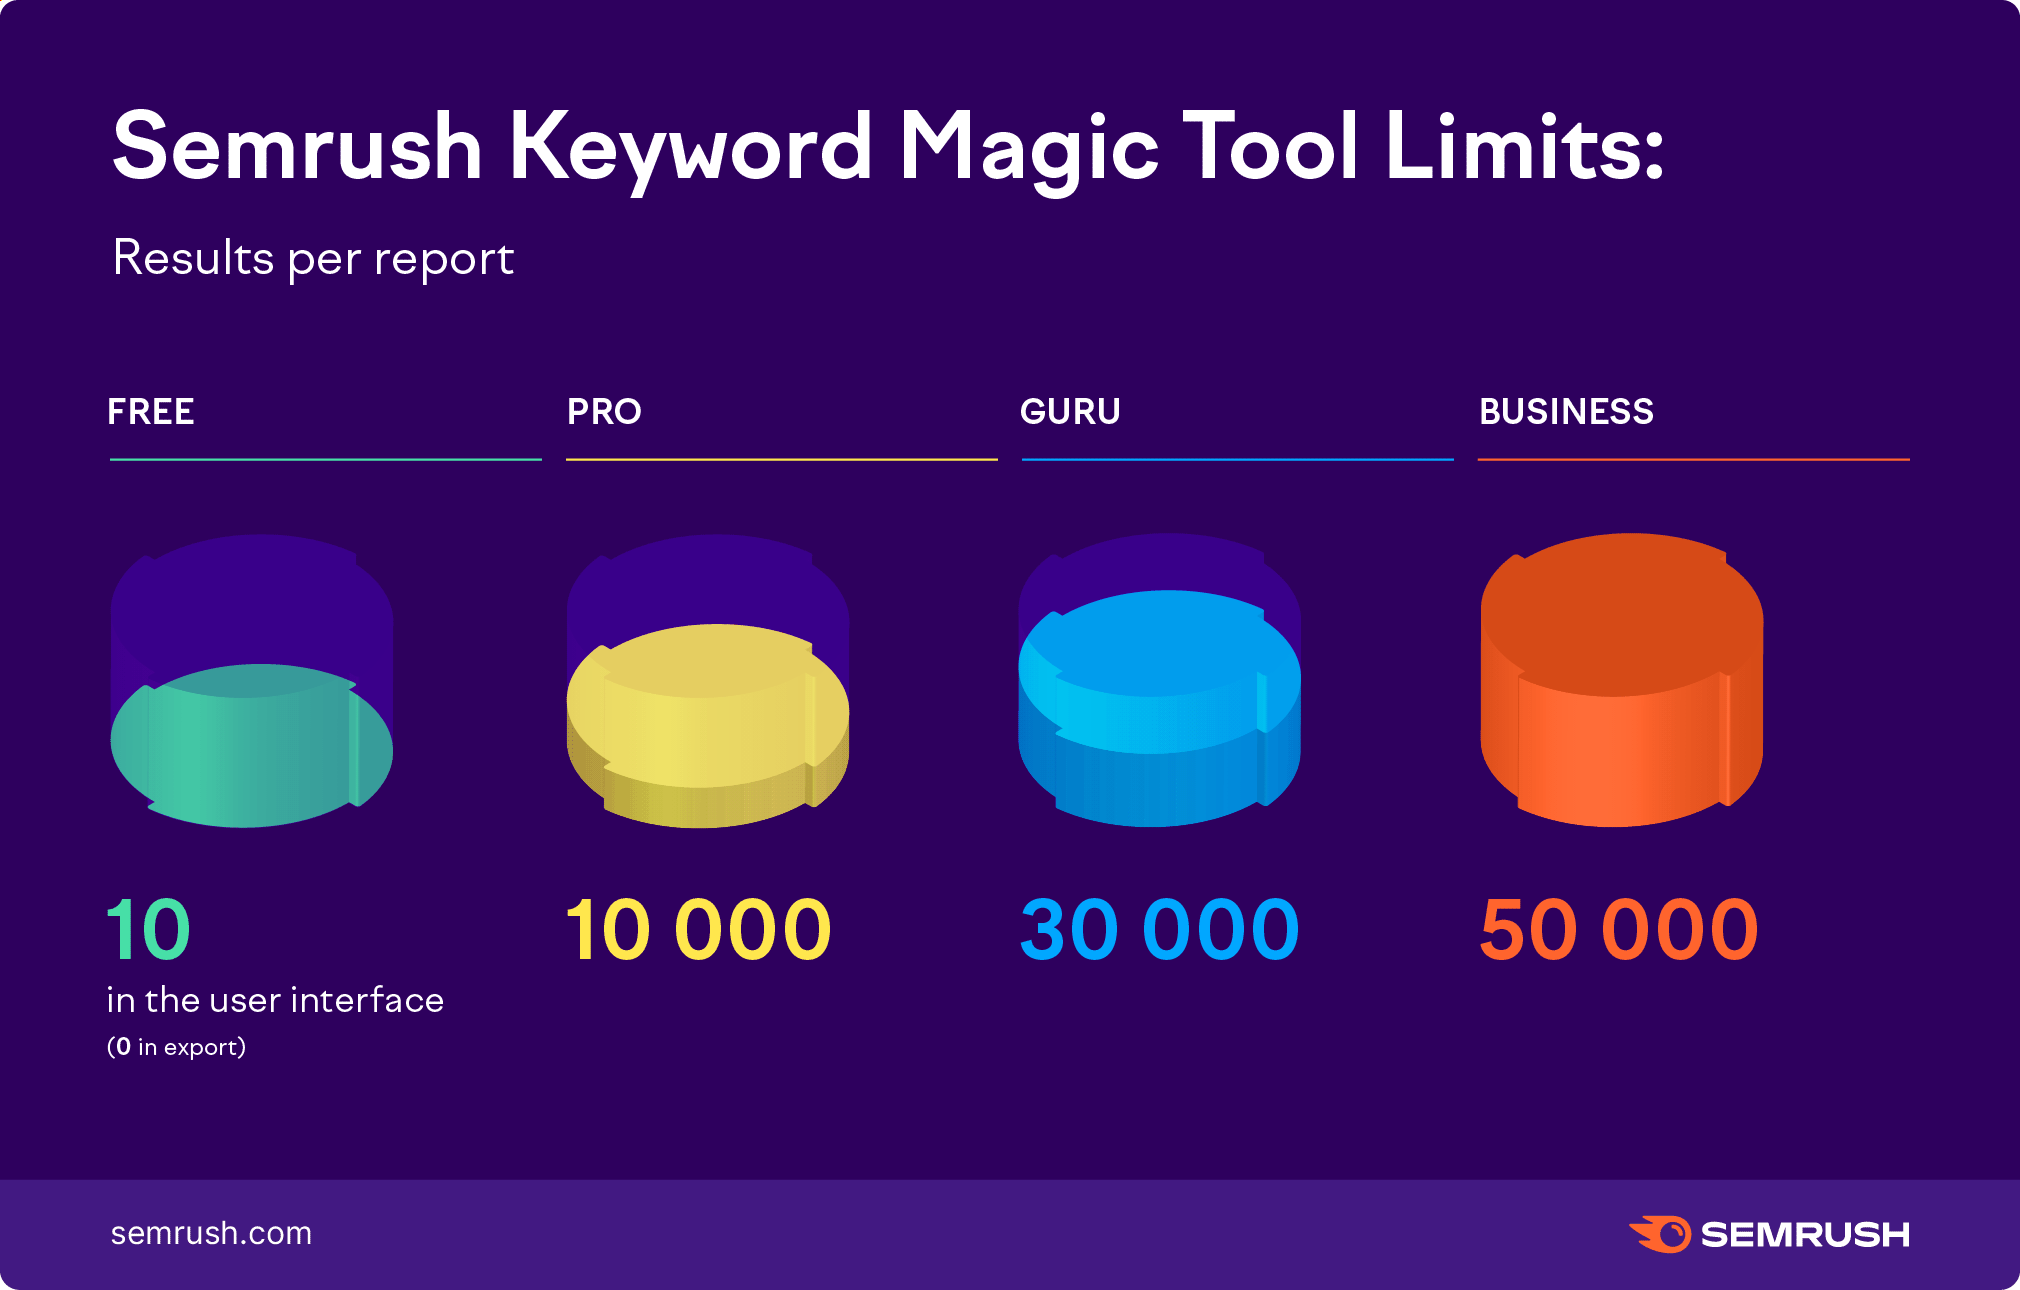 Límites de Keyword Magic Tool de Semrush: resultados por informe. Gratuito - 10 en la interfaz de usuario, 0 para exportar, Pro - 10.000, Guru - 30.000, Business - 50.000. 